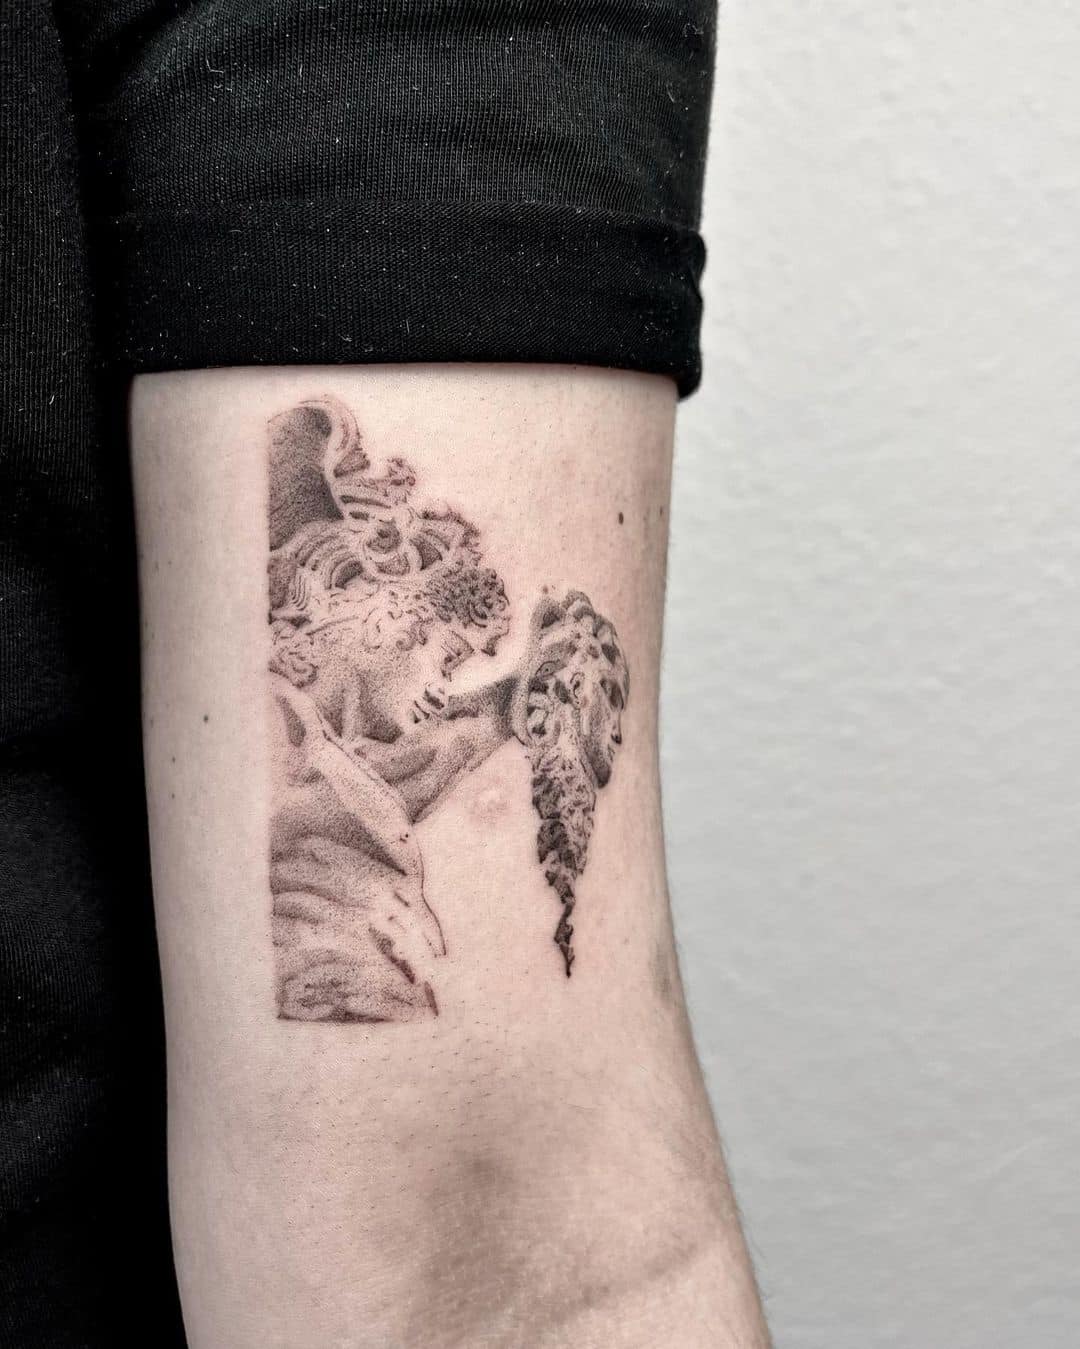 Minimalistic medusa tattoo by meerkat.tattoo